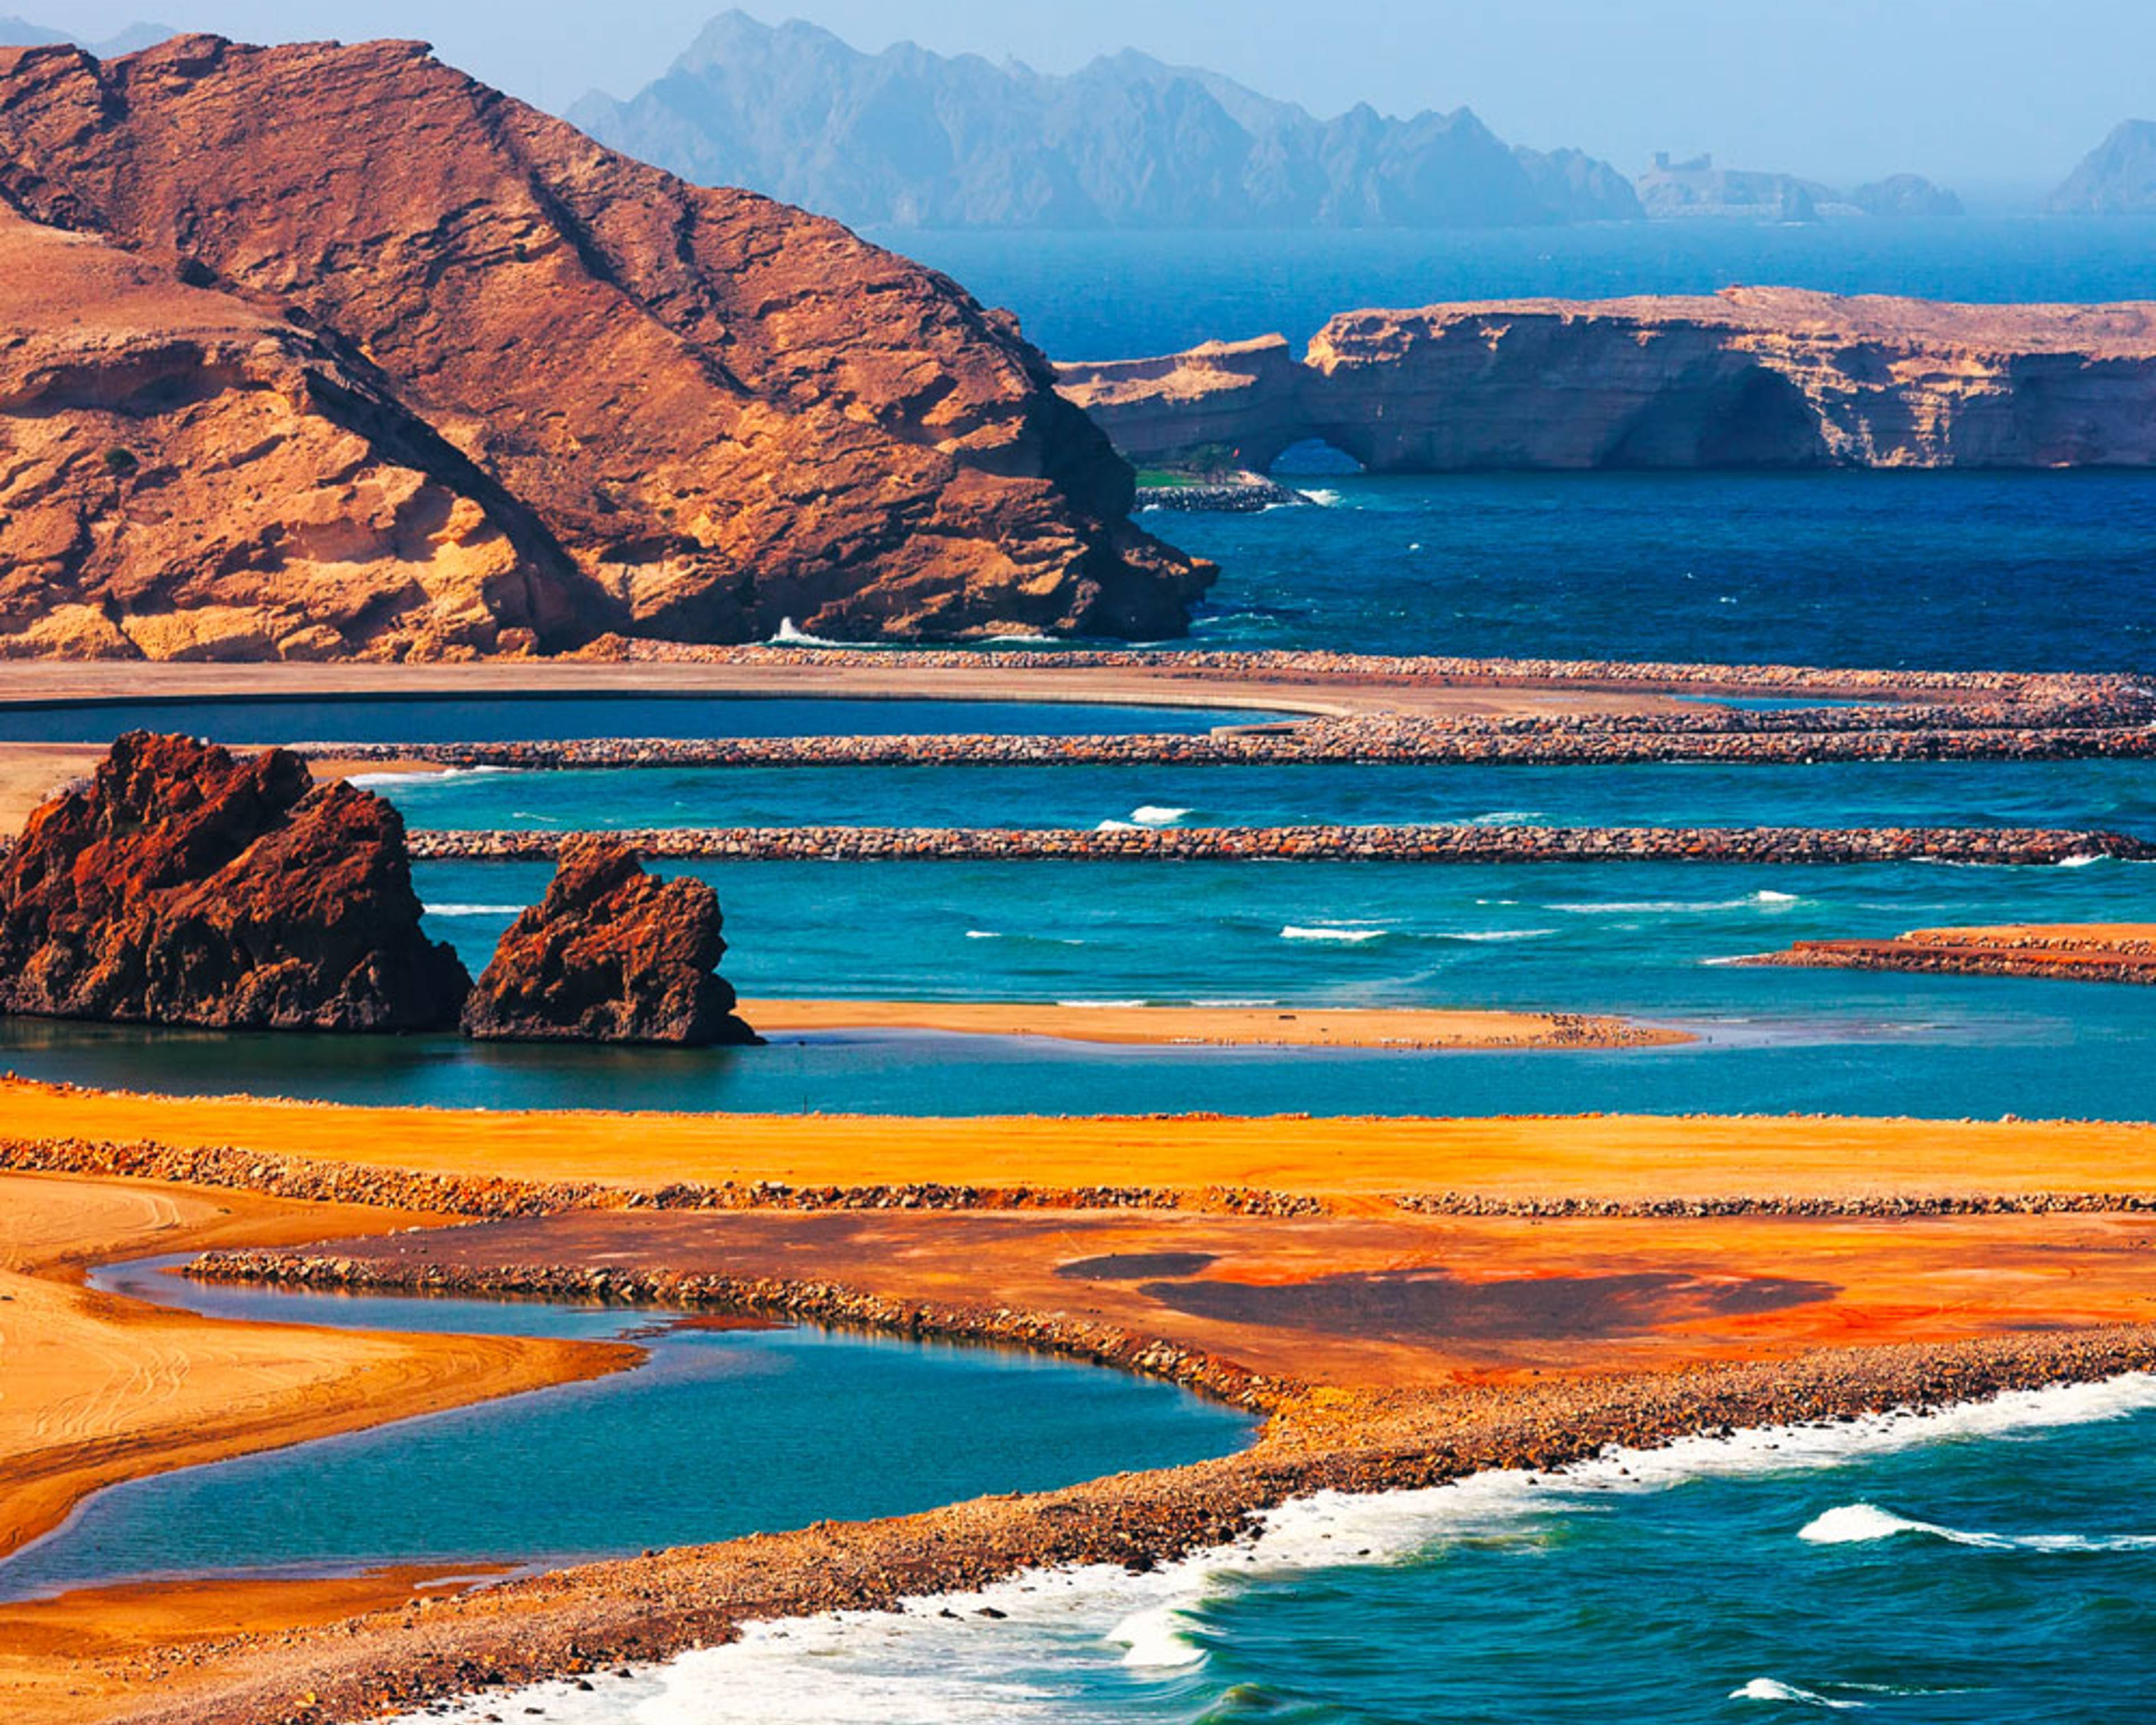 Naturreisen Oman - jetzt individuell gestalten